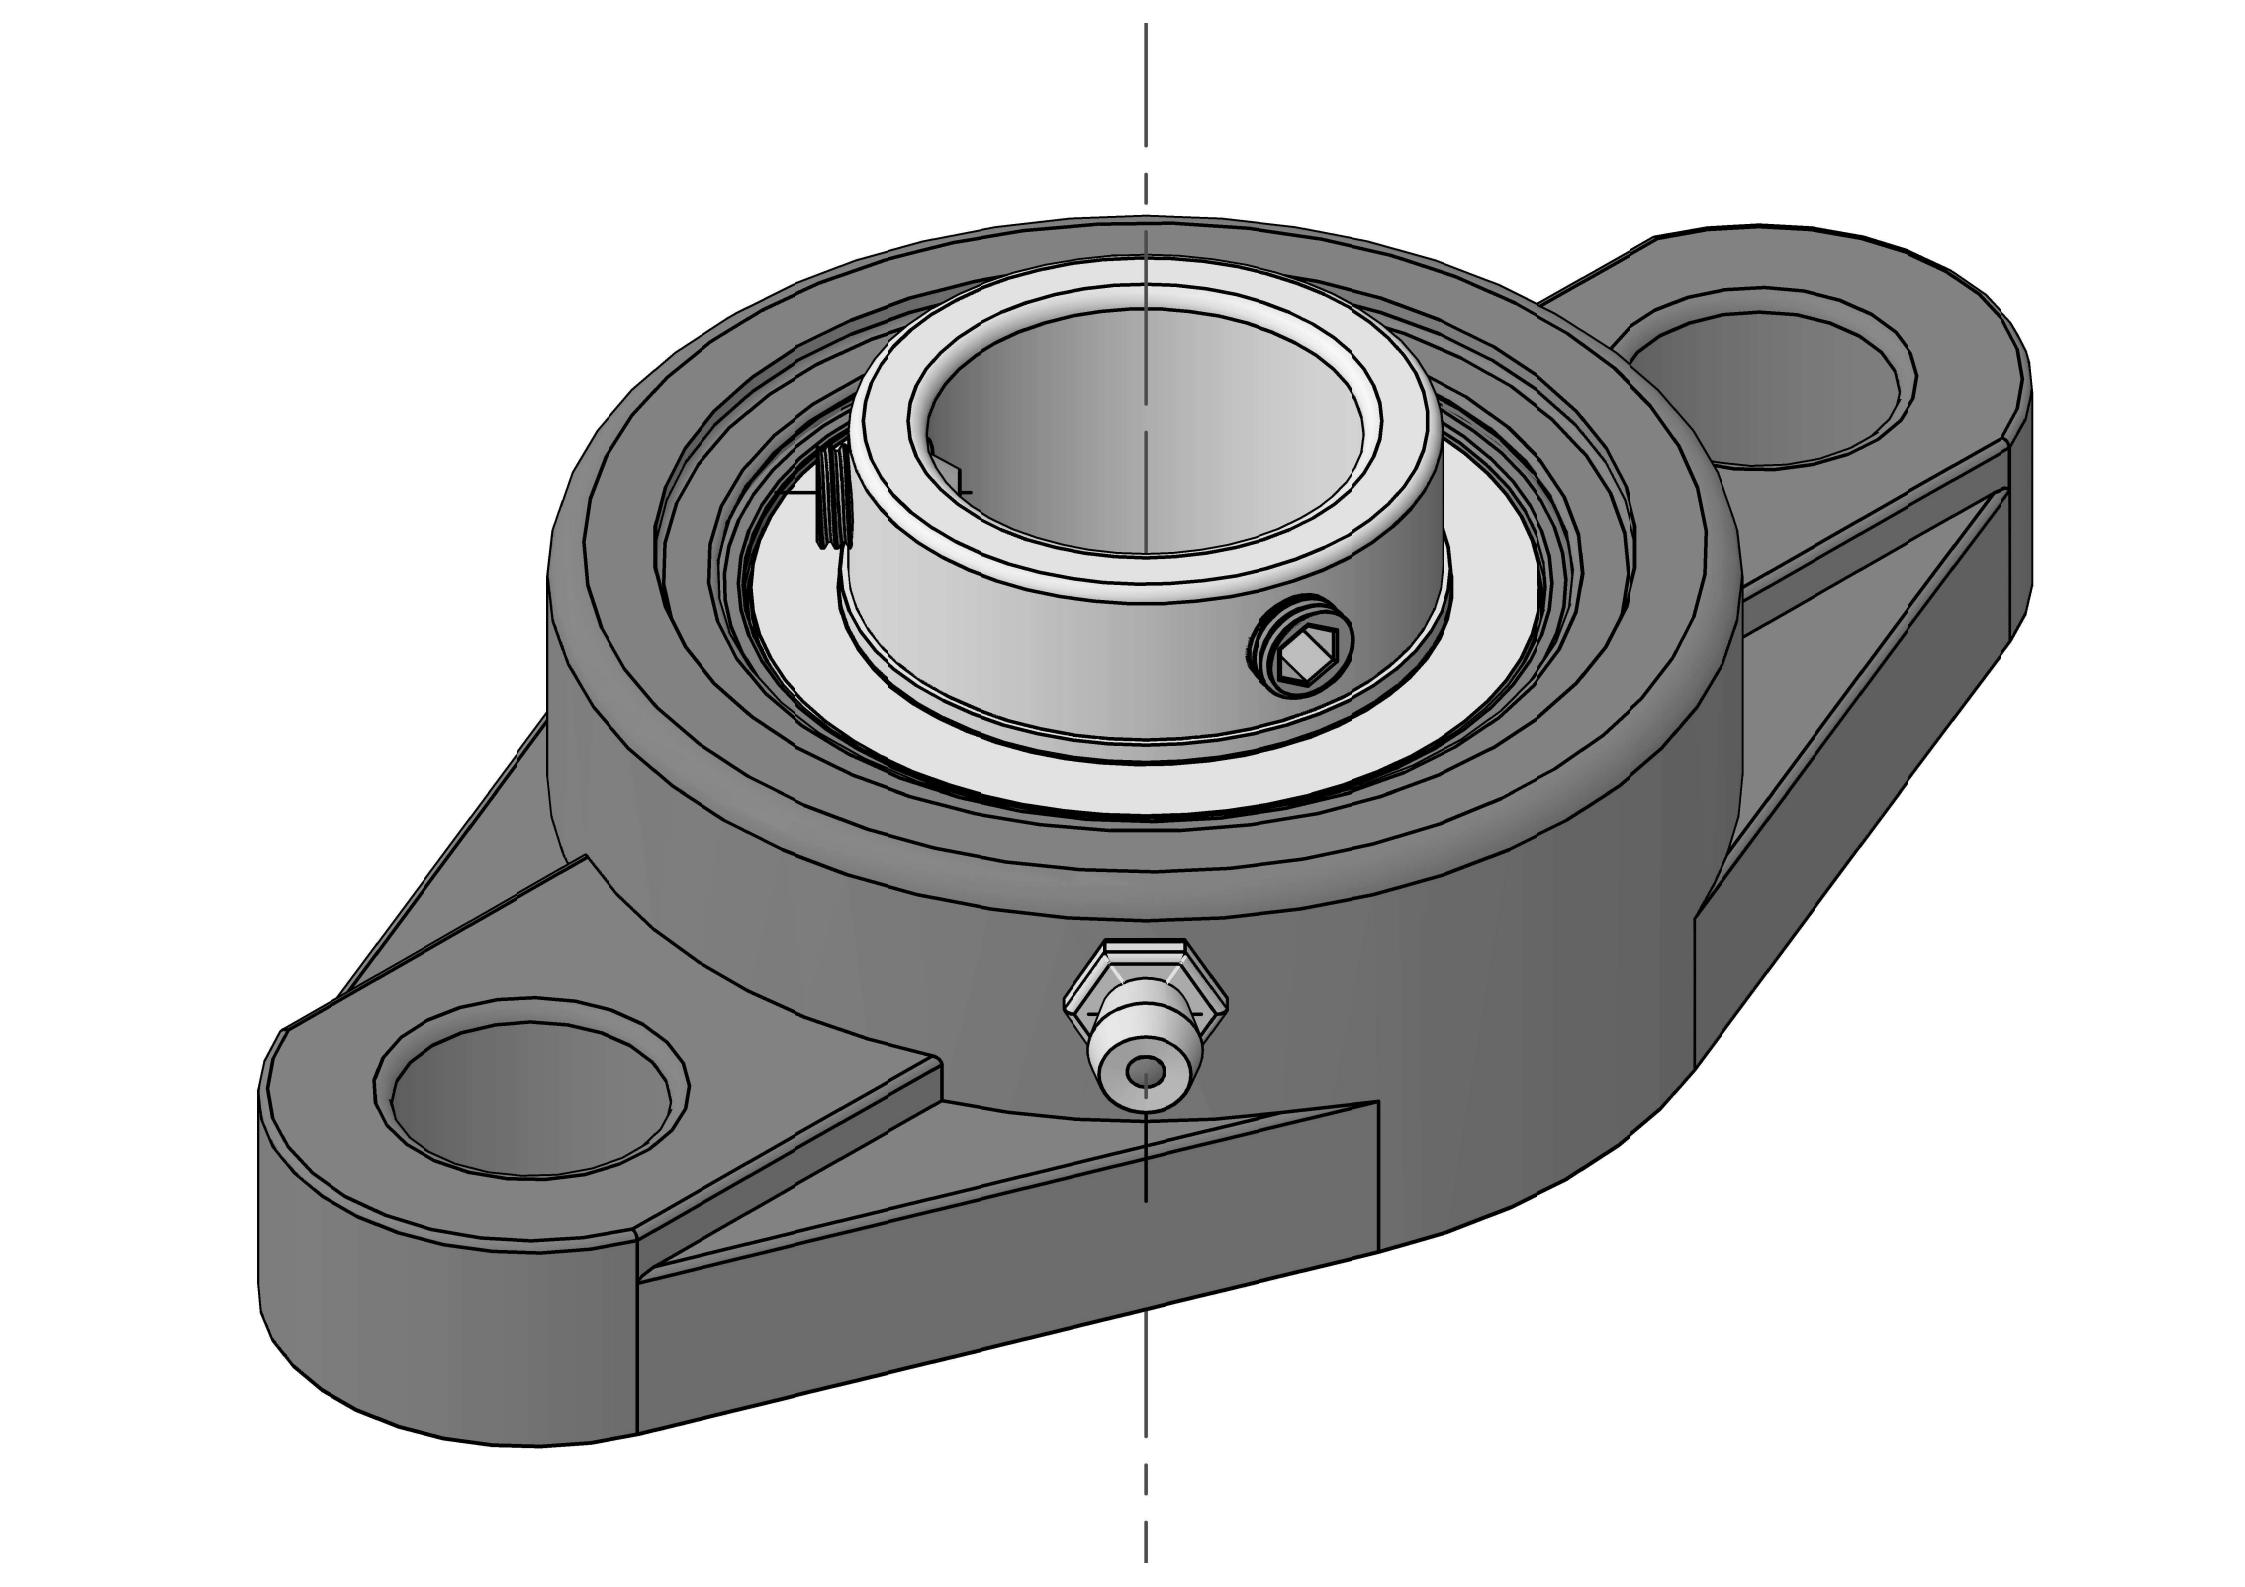 UCFL316 Ležajne jedinice s dva vijka i ovalnom prirubnicom s provrtom od 80 mm